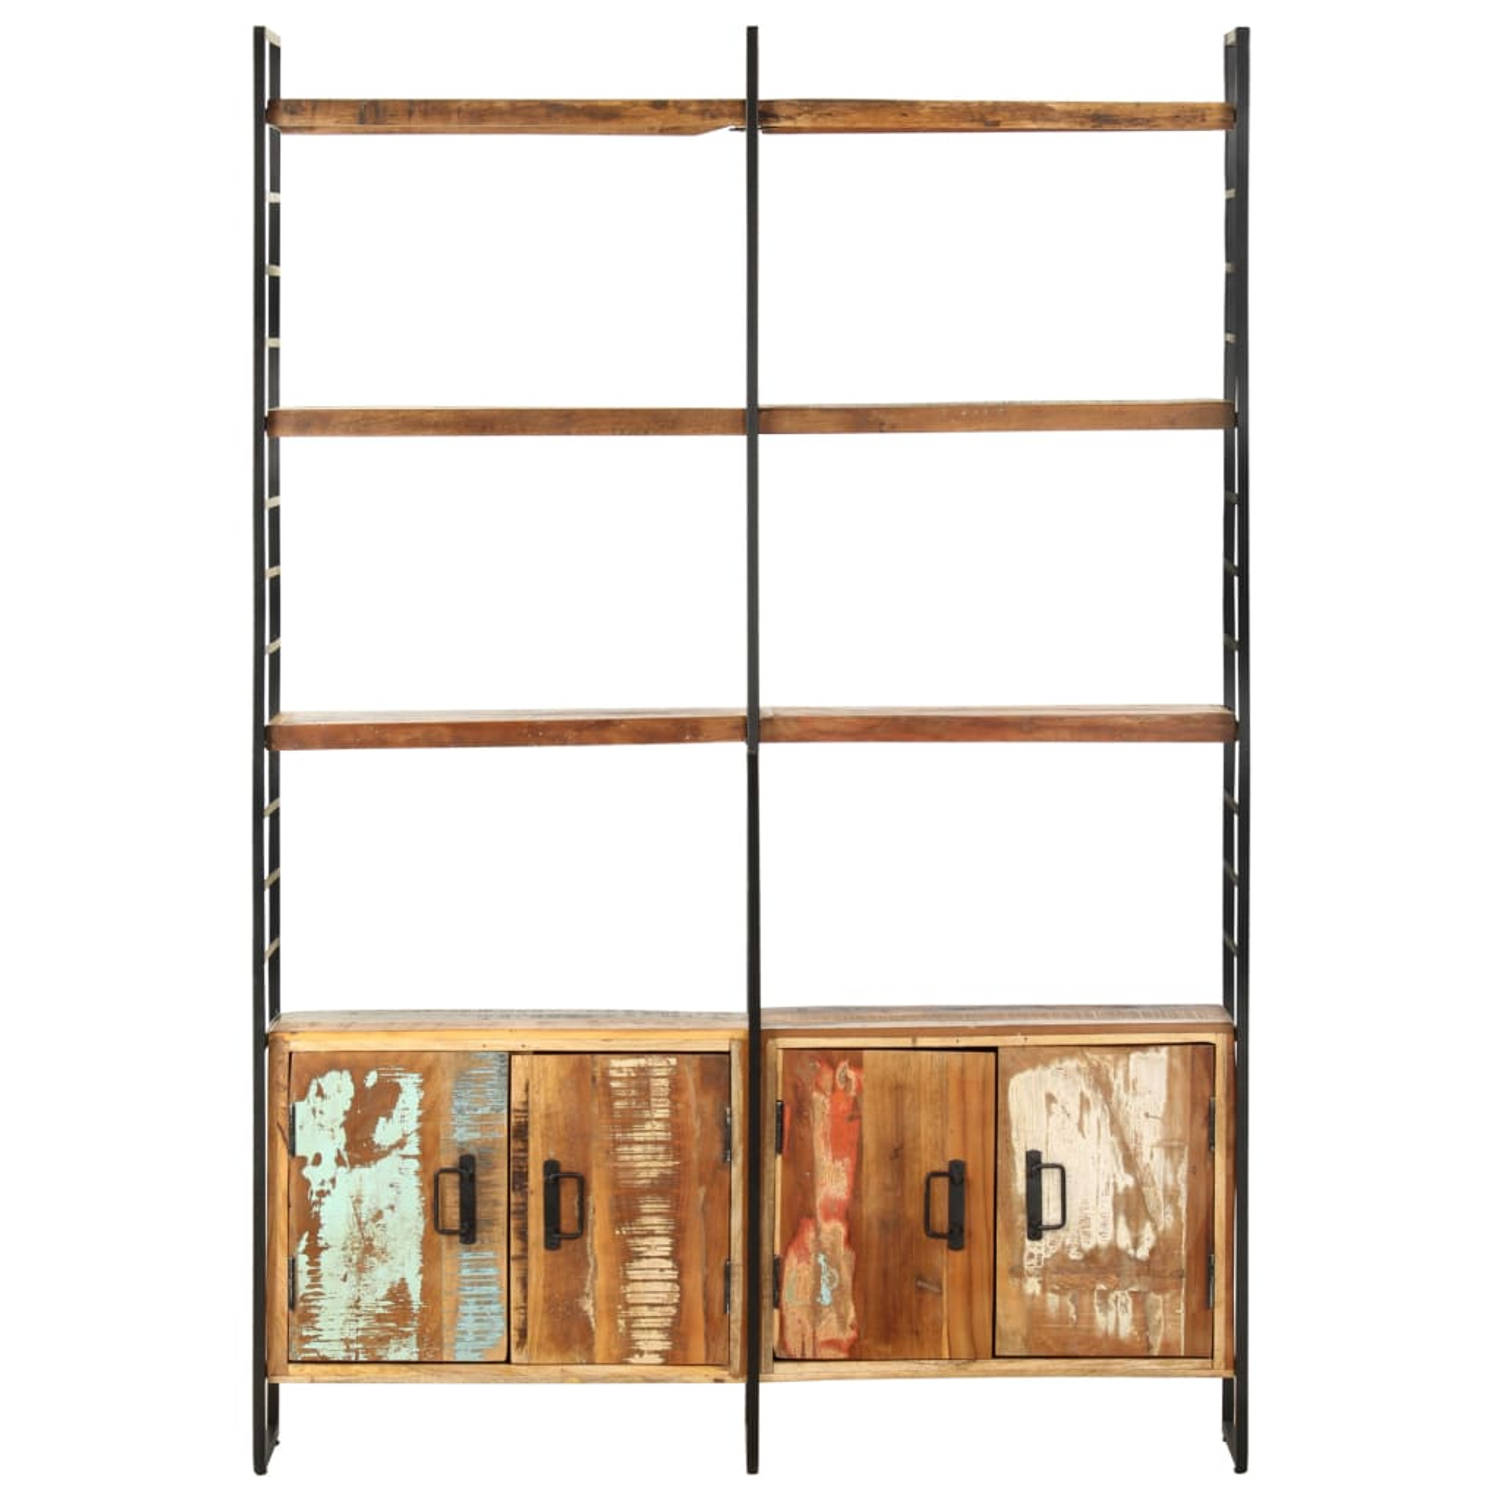 The Living Store Boekenkast Industriële Stijl - 124x30x180 cm - Massief gerecycled hout en ijzeren frame